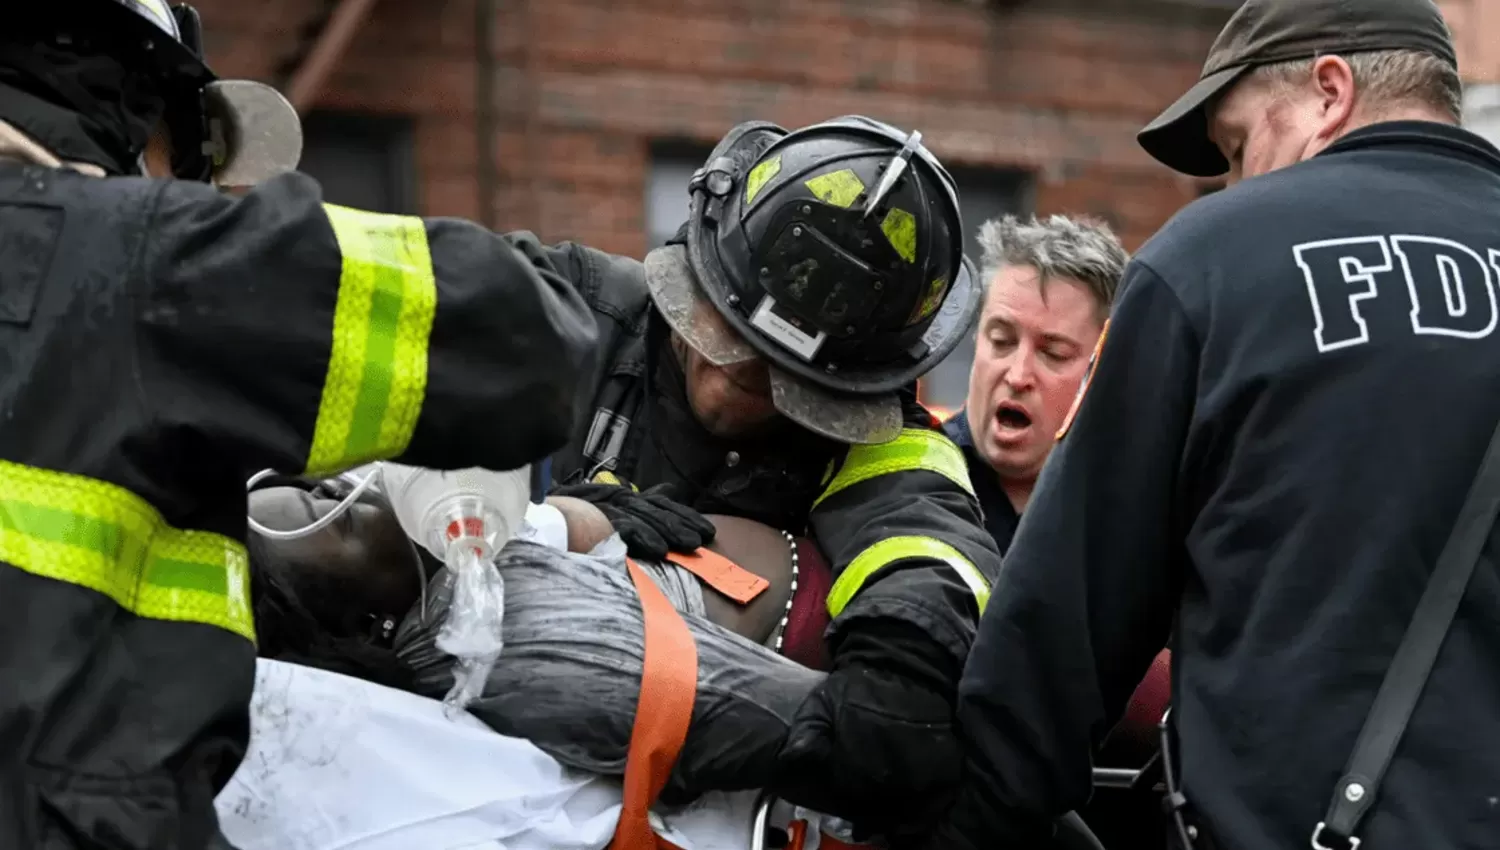 TRAGEDIA. Al menos 19 muertos tras un incendio en un edificio del Bronx. FOTO REUTERS.